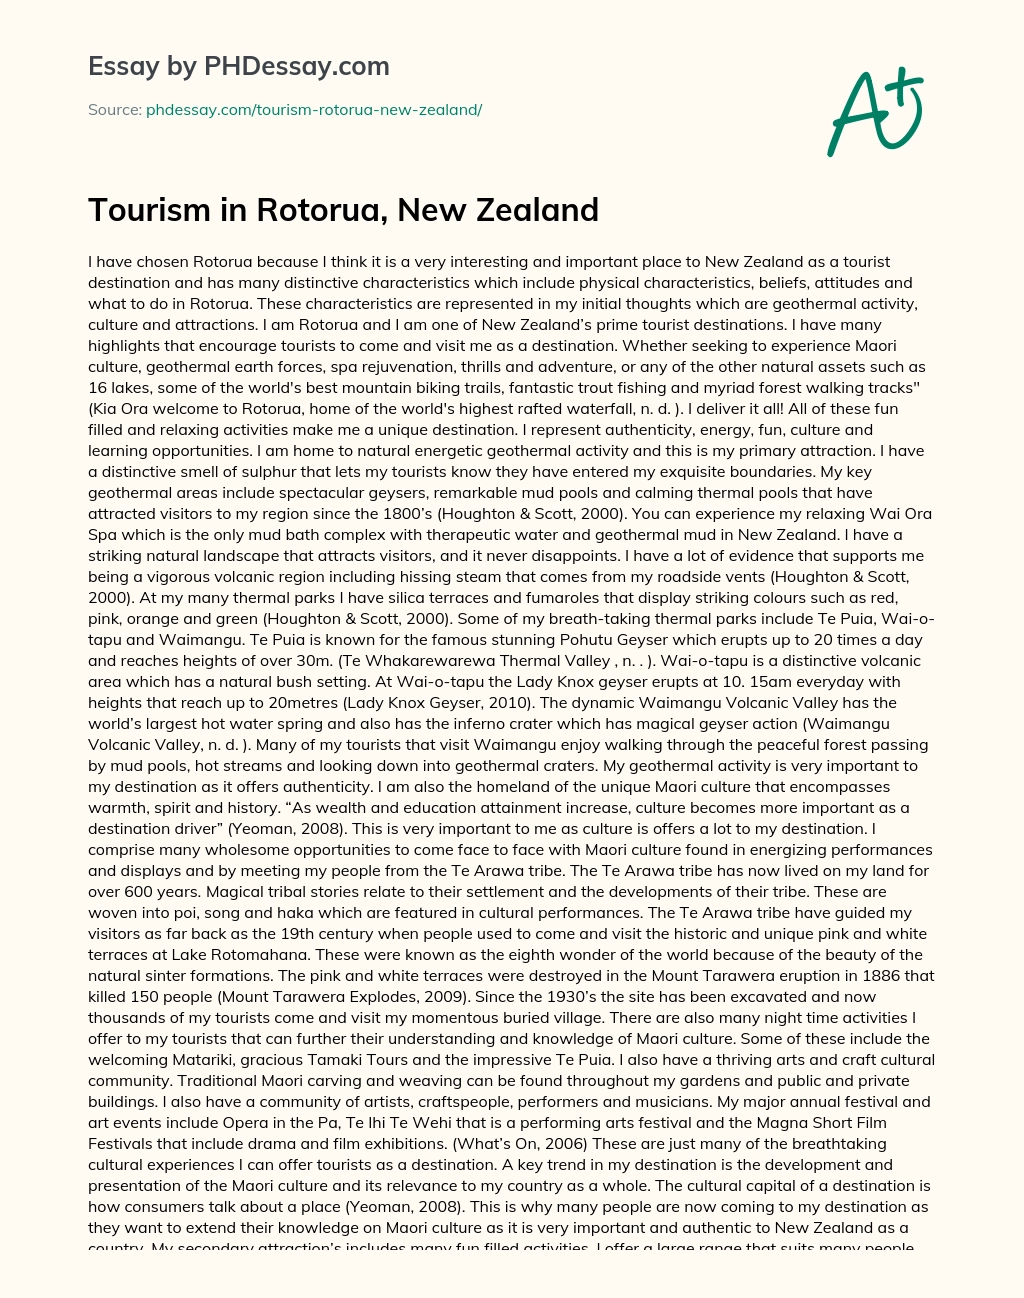 Tourism in Rotorua, New Zealand essay